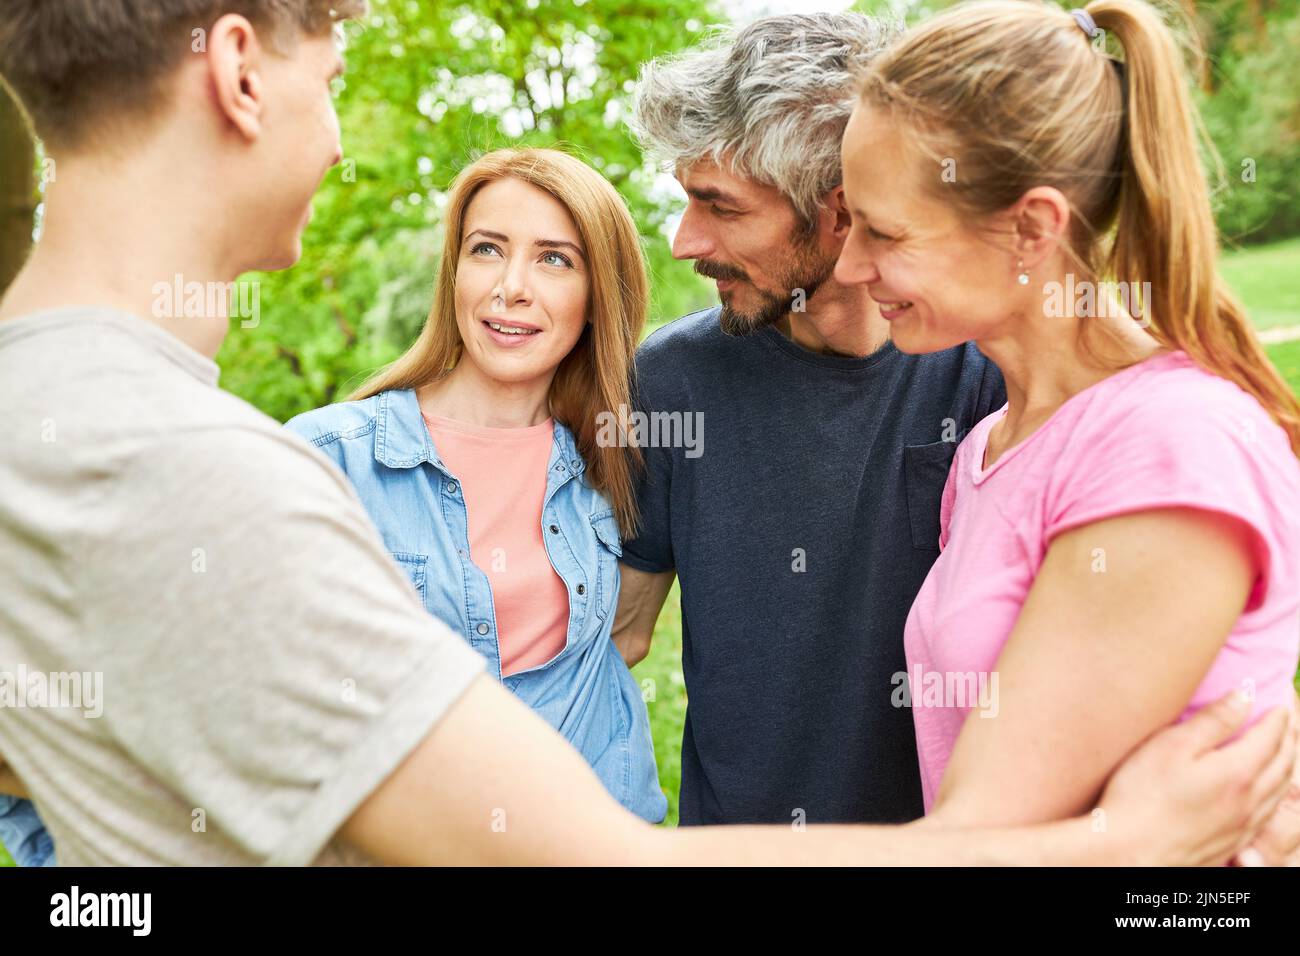 Los jóvenes están en círculo y hablan unos con otros como amigos en una excursión de verano Foto de stock